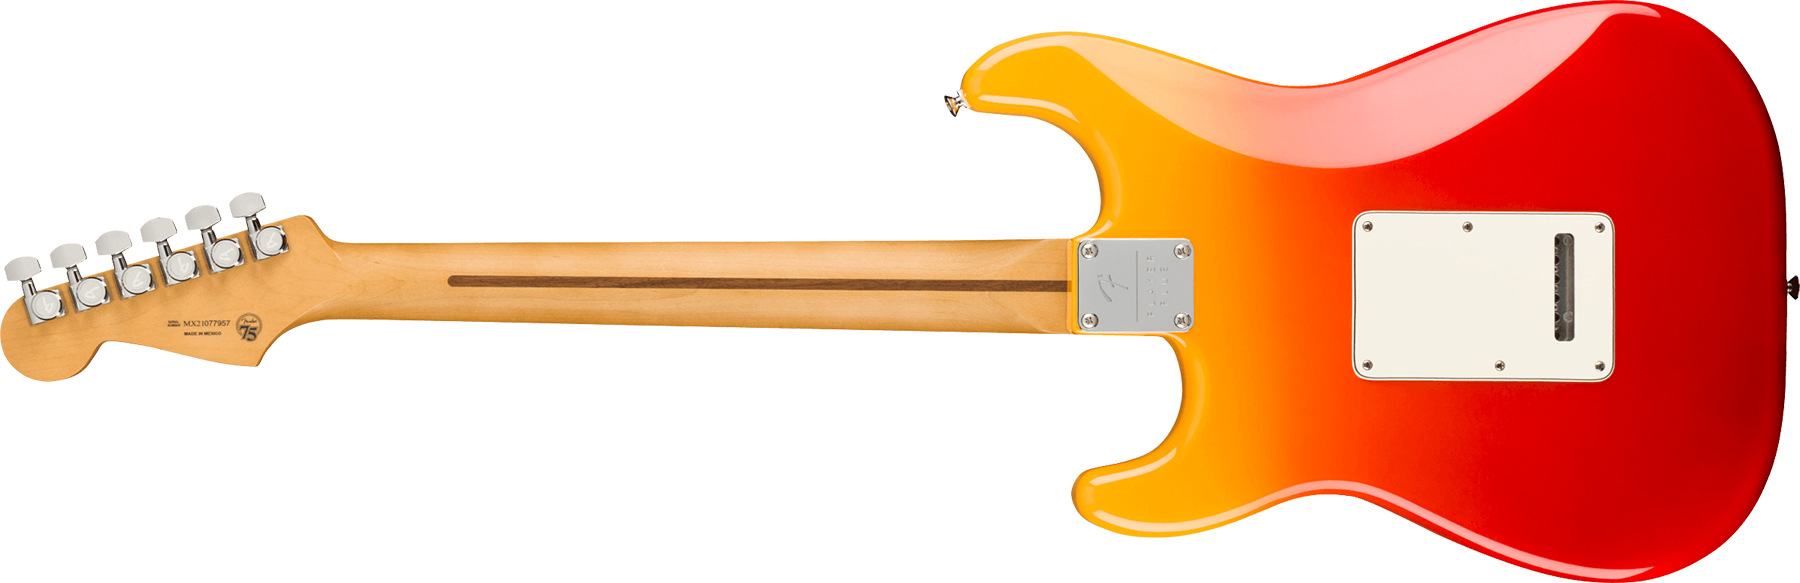 Fender Strat Player Plus Lh Gaucher Mex 3s Trem Pf - Tequila Sunrise - Linkshandige elektrische gitaar - Variation 1